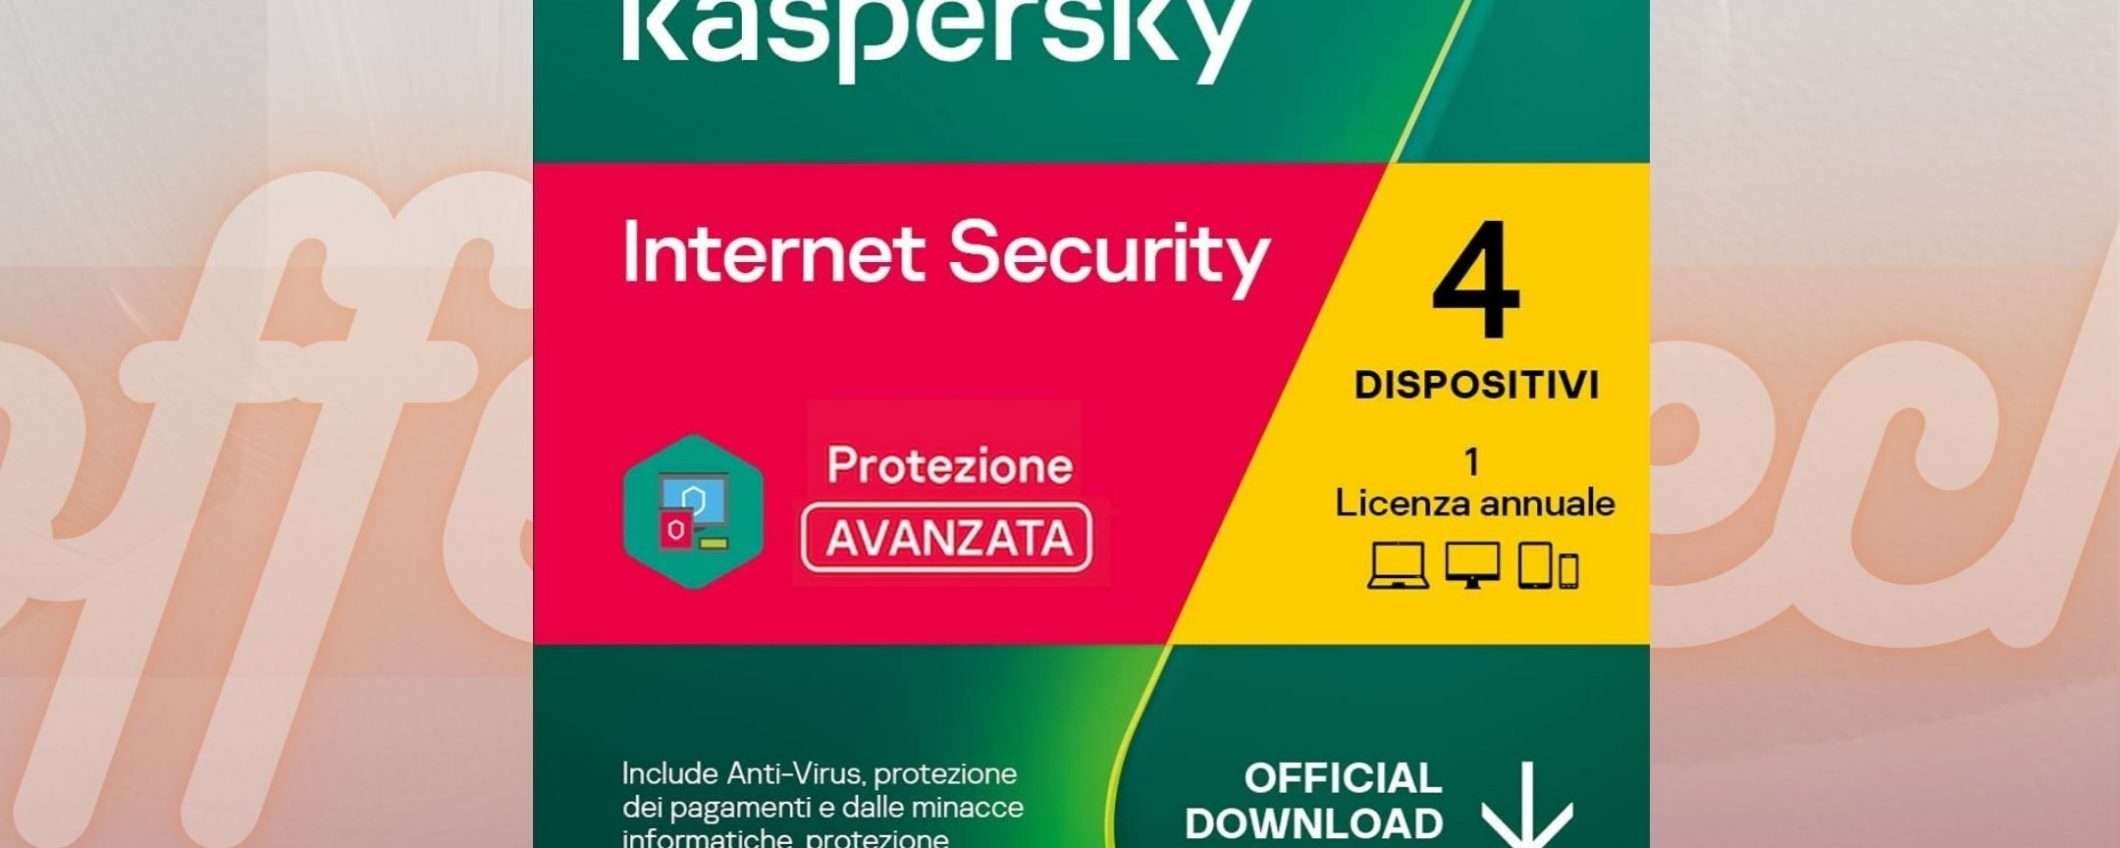 Kaspersky: l'antivirus per tutti i tuoi dispositivi a soli 24,99€